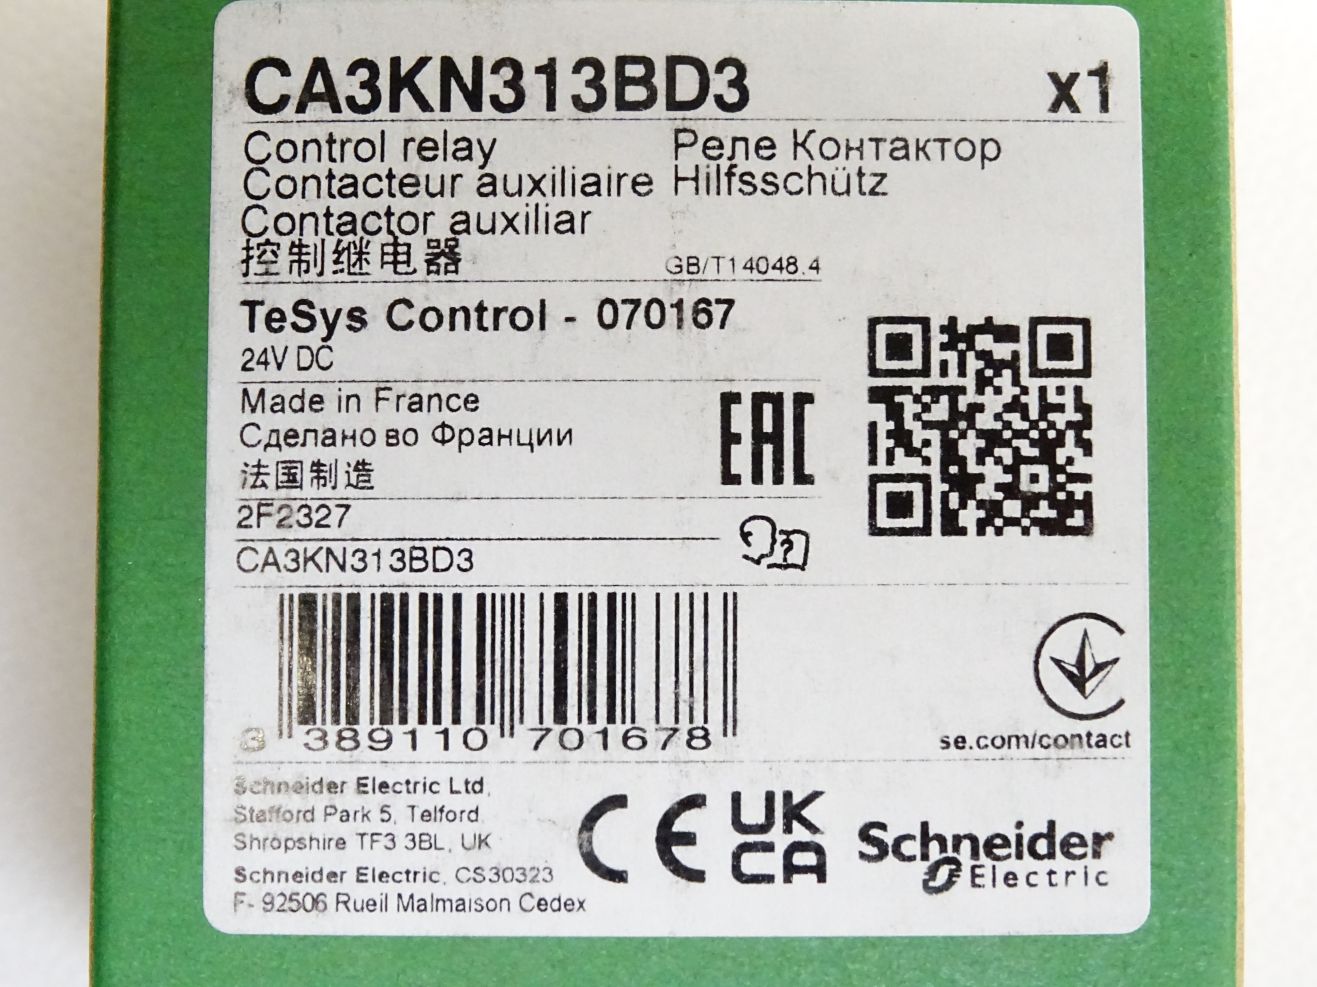 Hilfsschütz Schneider Electric TeSys CA3KN22BD3